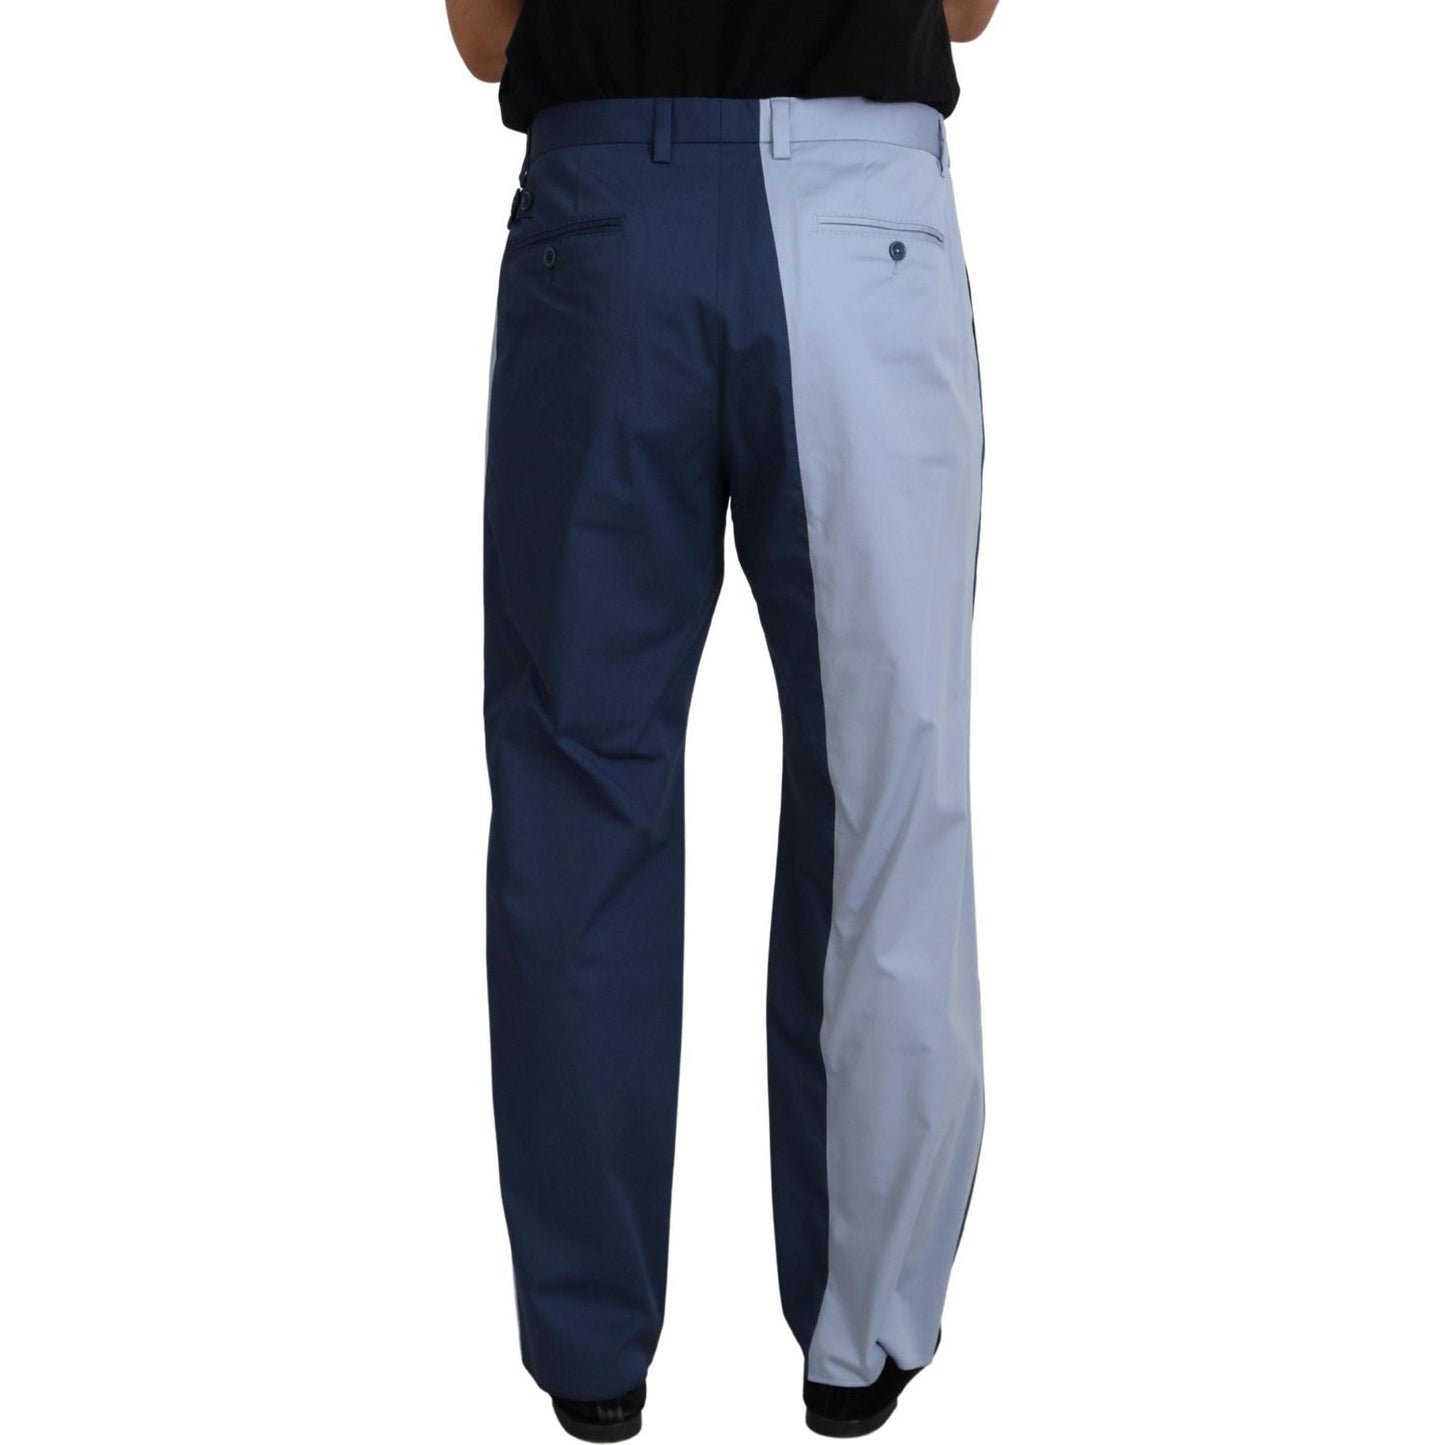 Dolce & Gabbana Elegant Blue Cotton Blend Pants for Men blue-cotton-straight-fit-pants